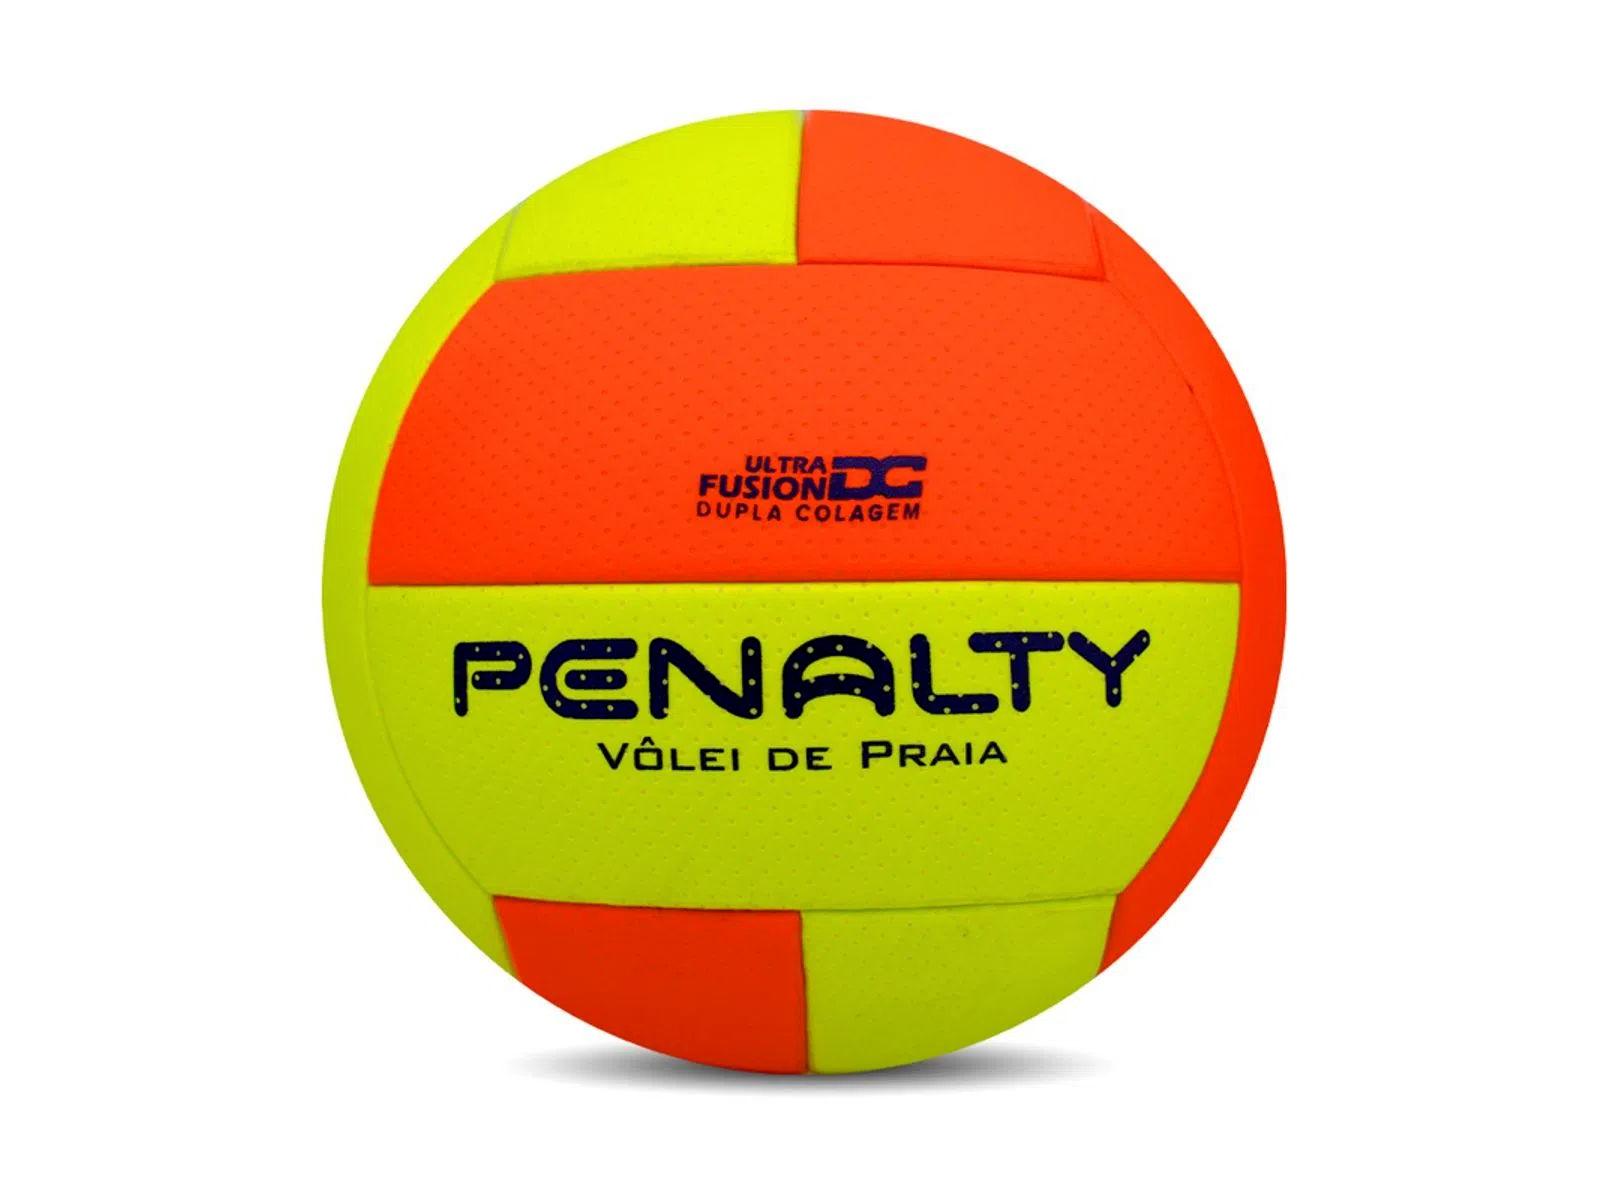 Bola de Basquete Penalty Shoot X - Preto+Bege